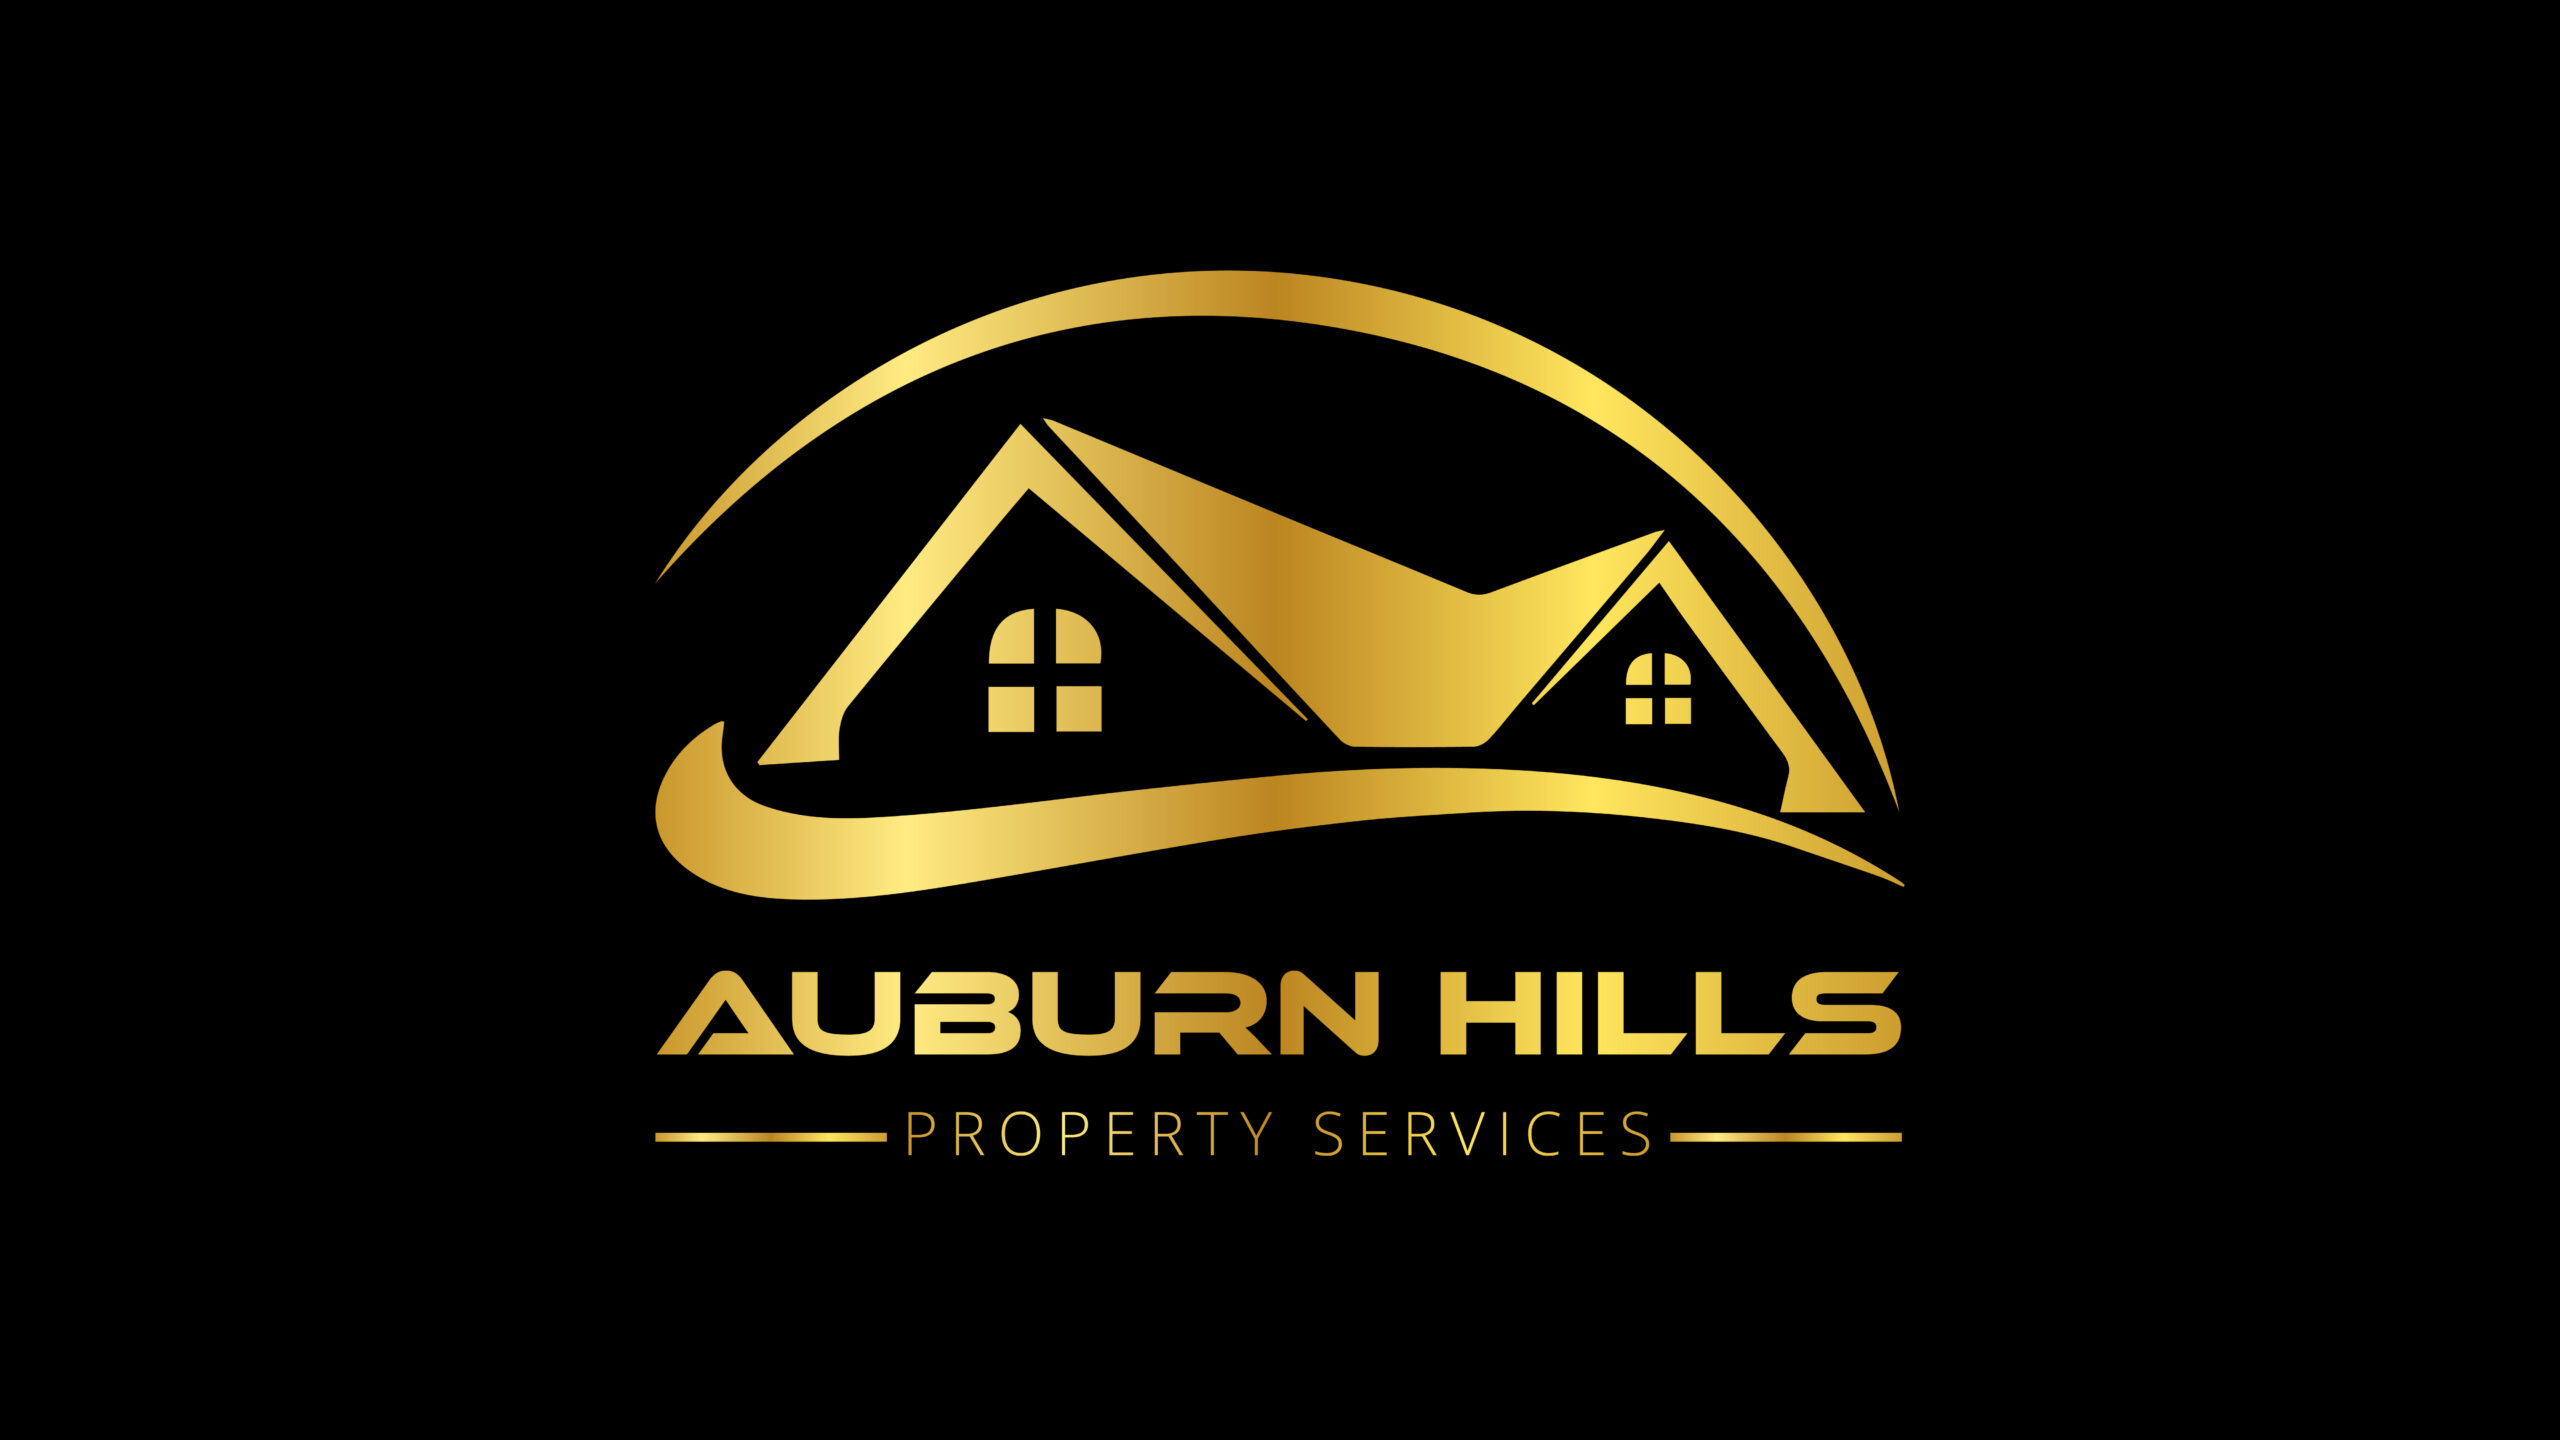 Auburn hills Property Services Logo